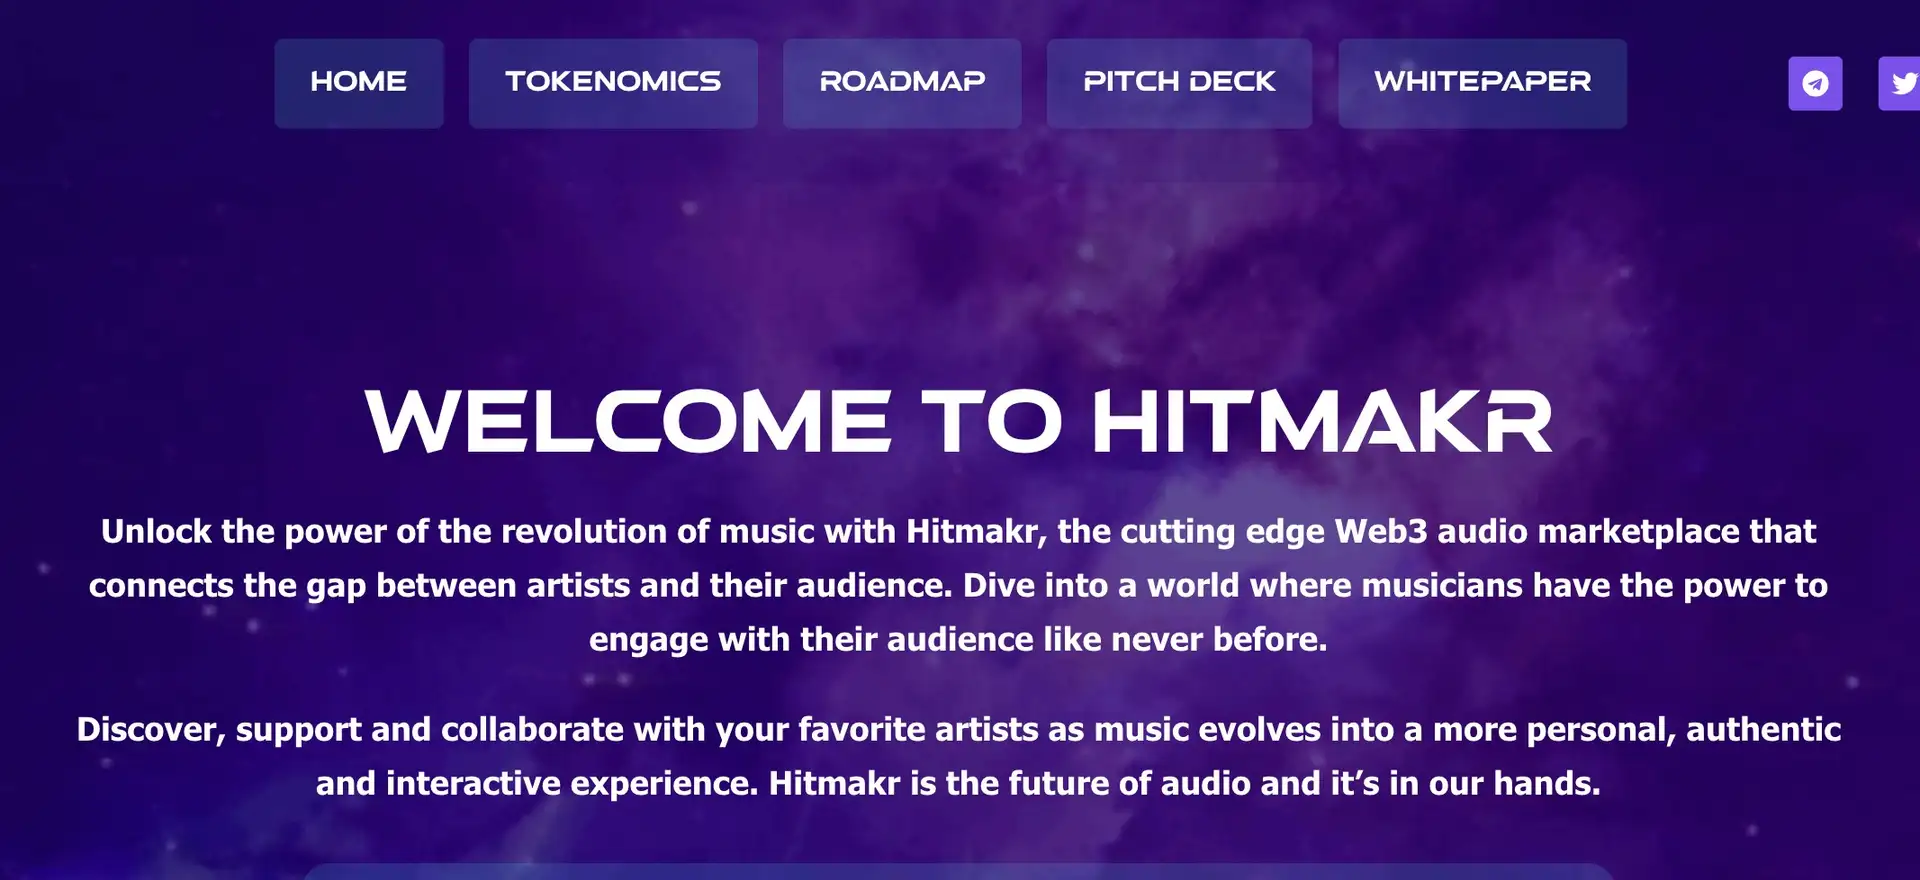 Hitmakr Review